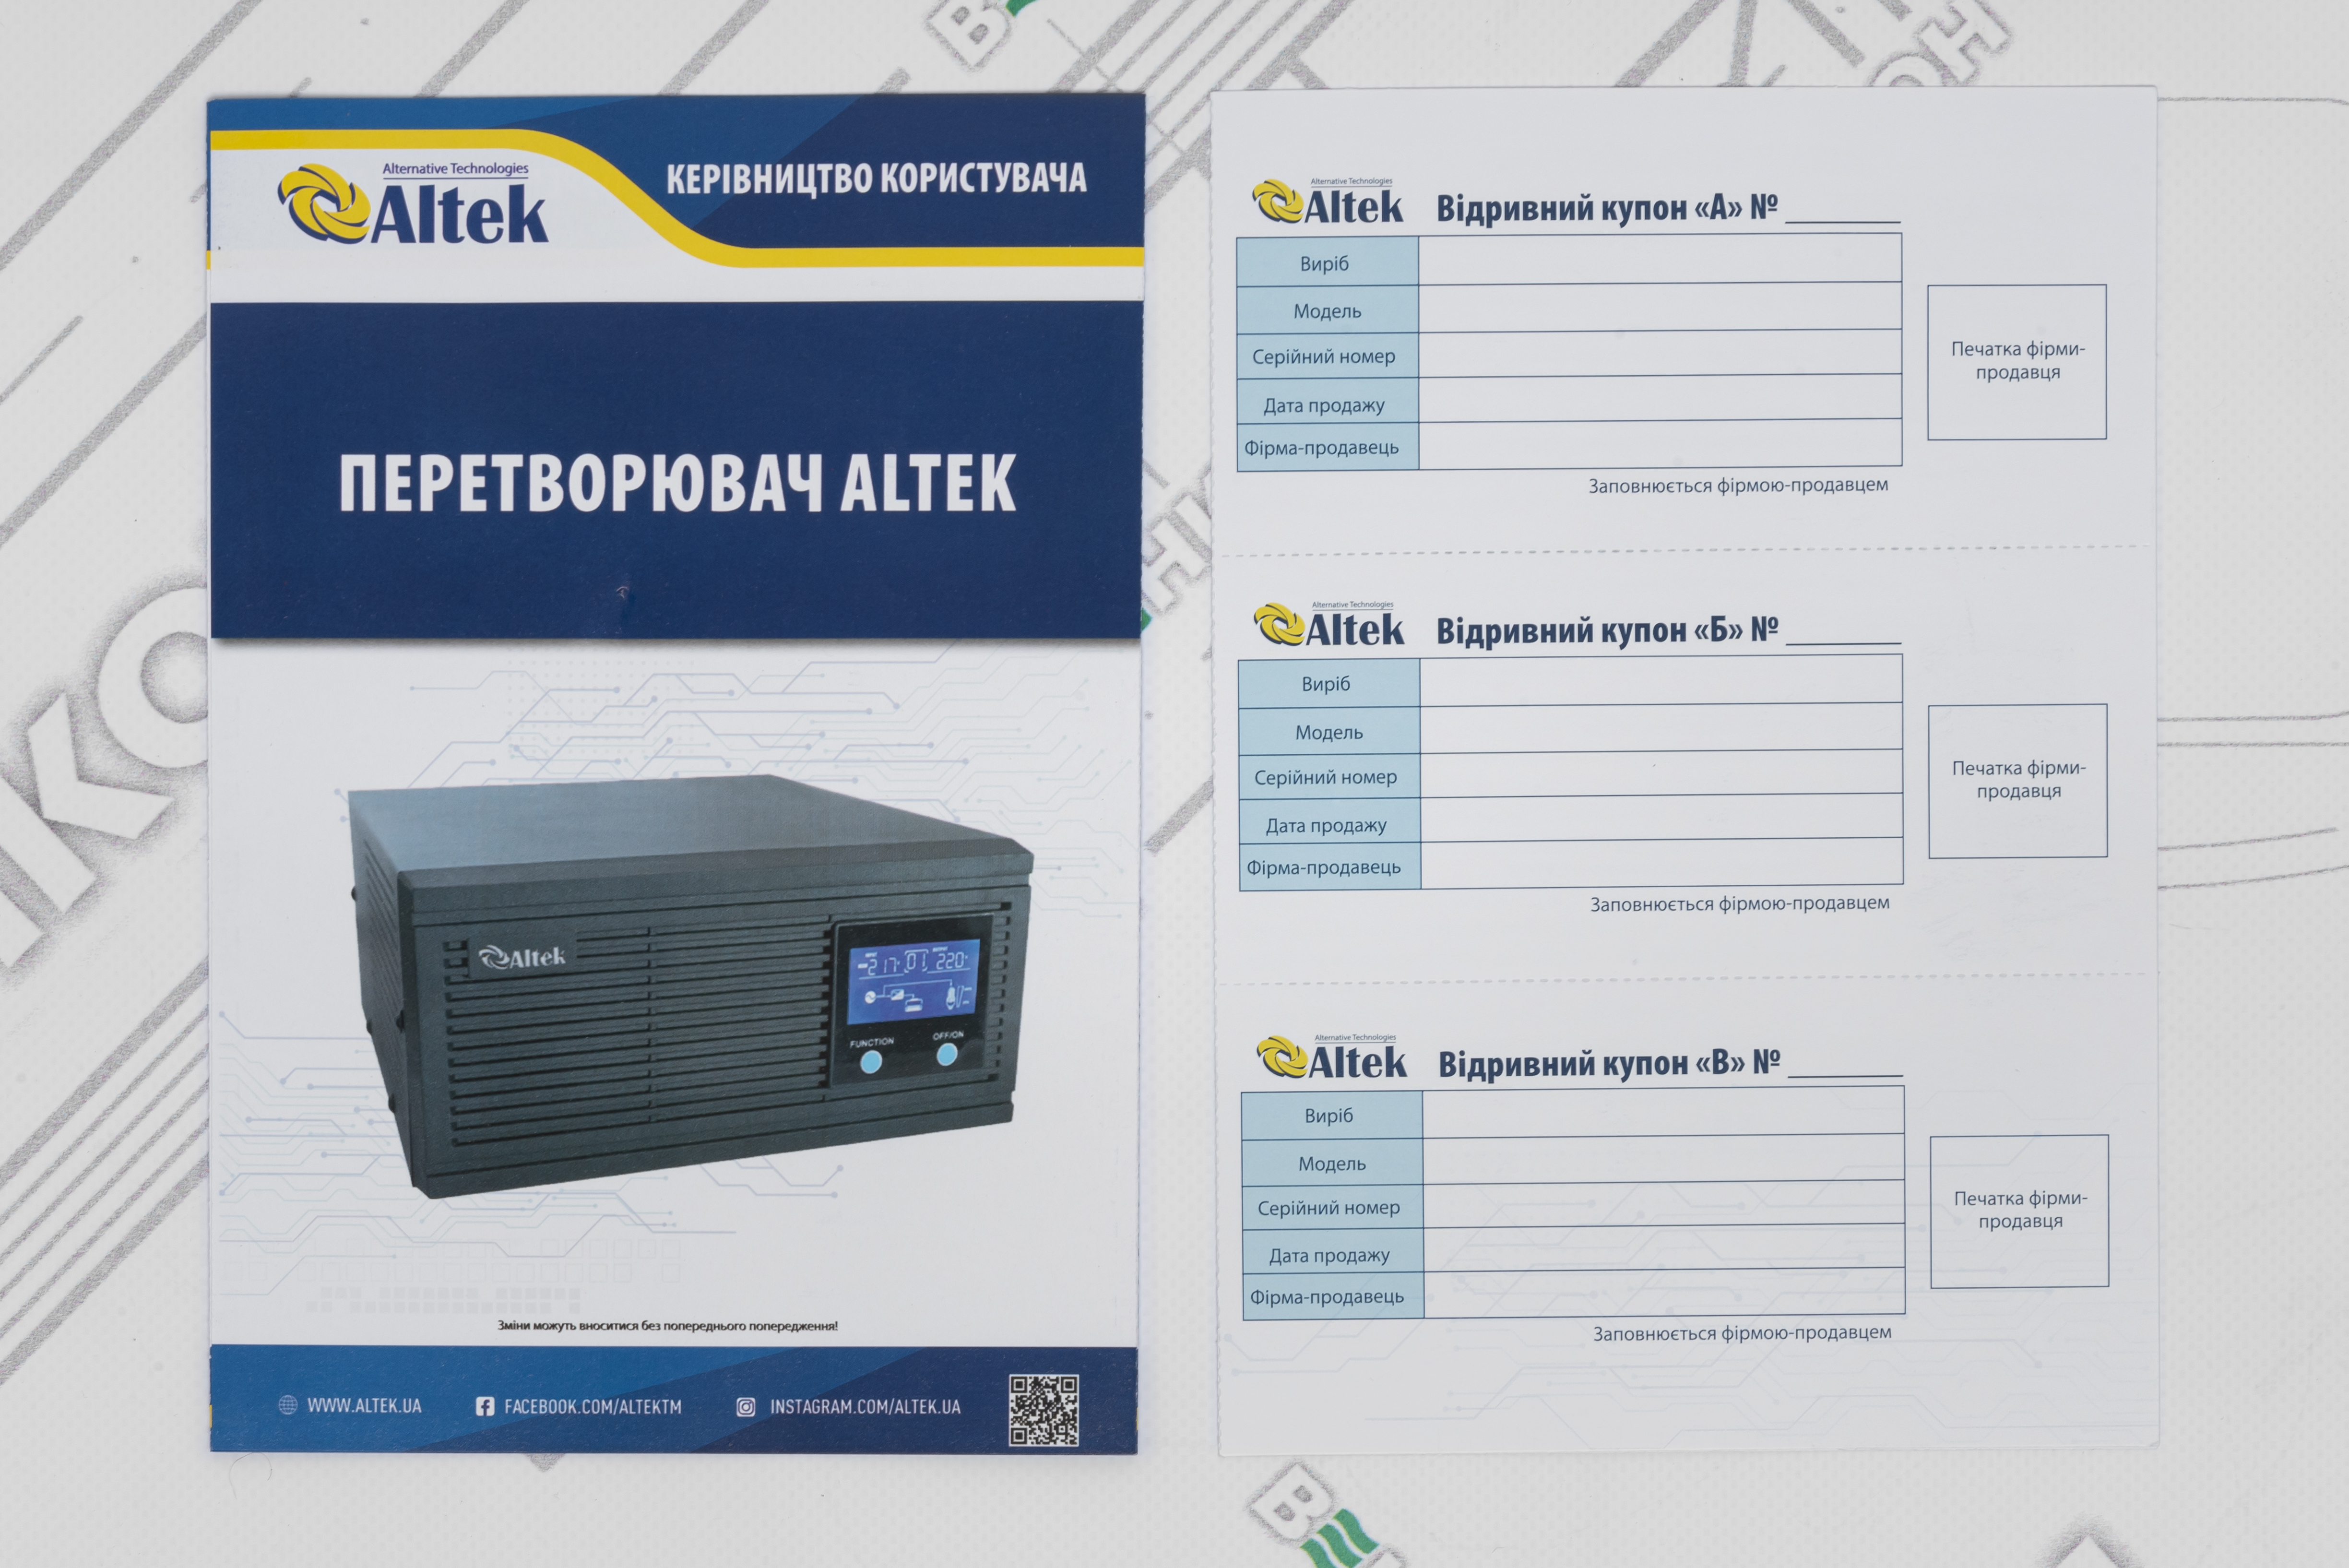 Комплект резервного питания Altek ASK12 800 VA/640W DC12V + ABT-65Аh/12V GEL характеристики - фотография 7